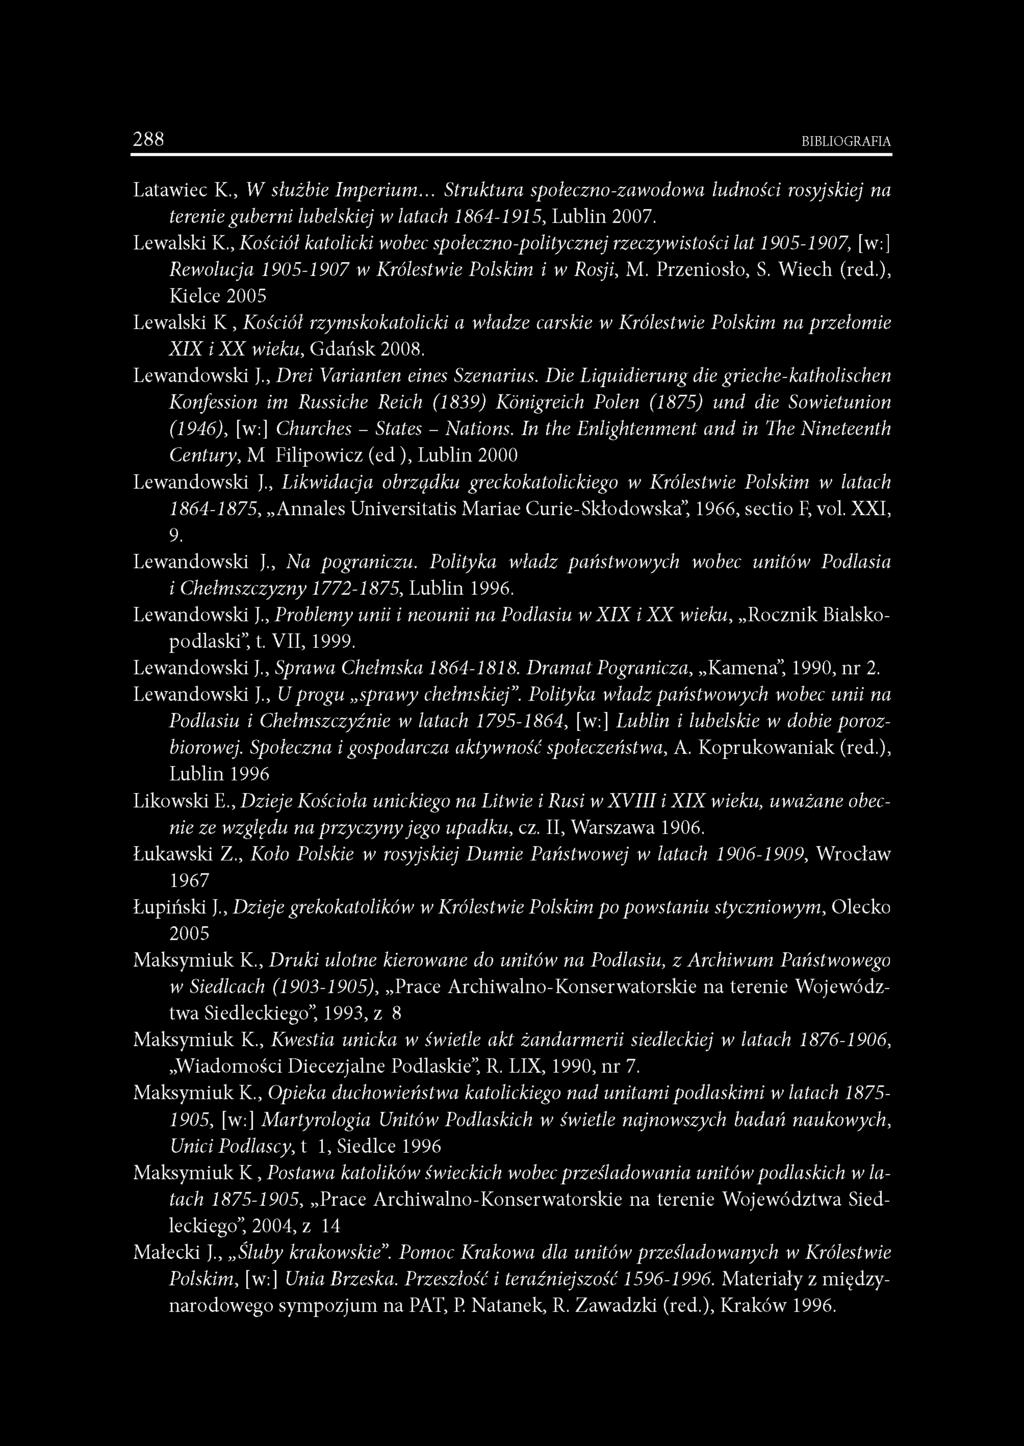 ), Kielce 2005 Lewalski K, Kościół rzymskokatolicki a władze carskie w Królestwie Polskim na przełomie XIX i X X wieku, Gdańsk 2008. Lewandowski J., Drei Varianten eines Szenarius.